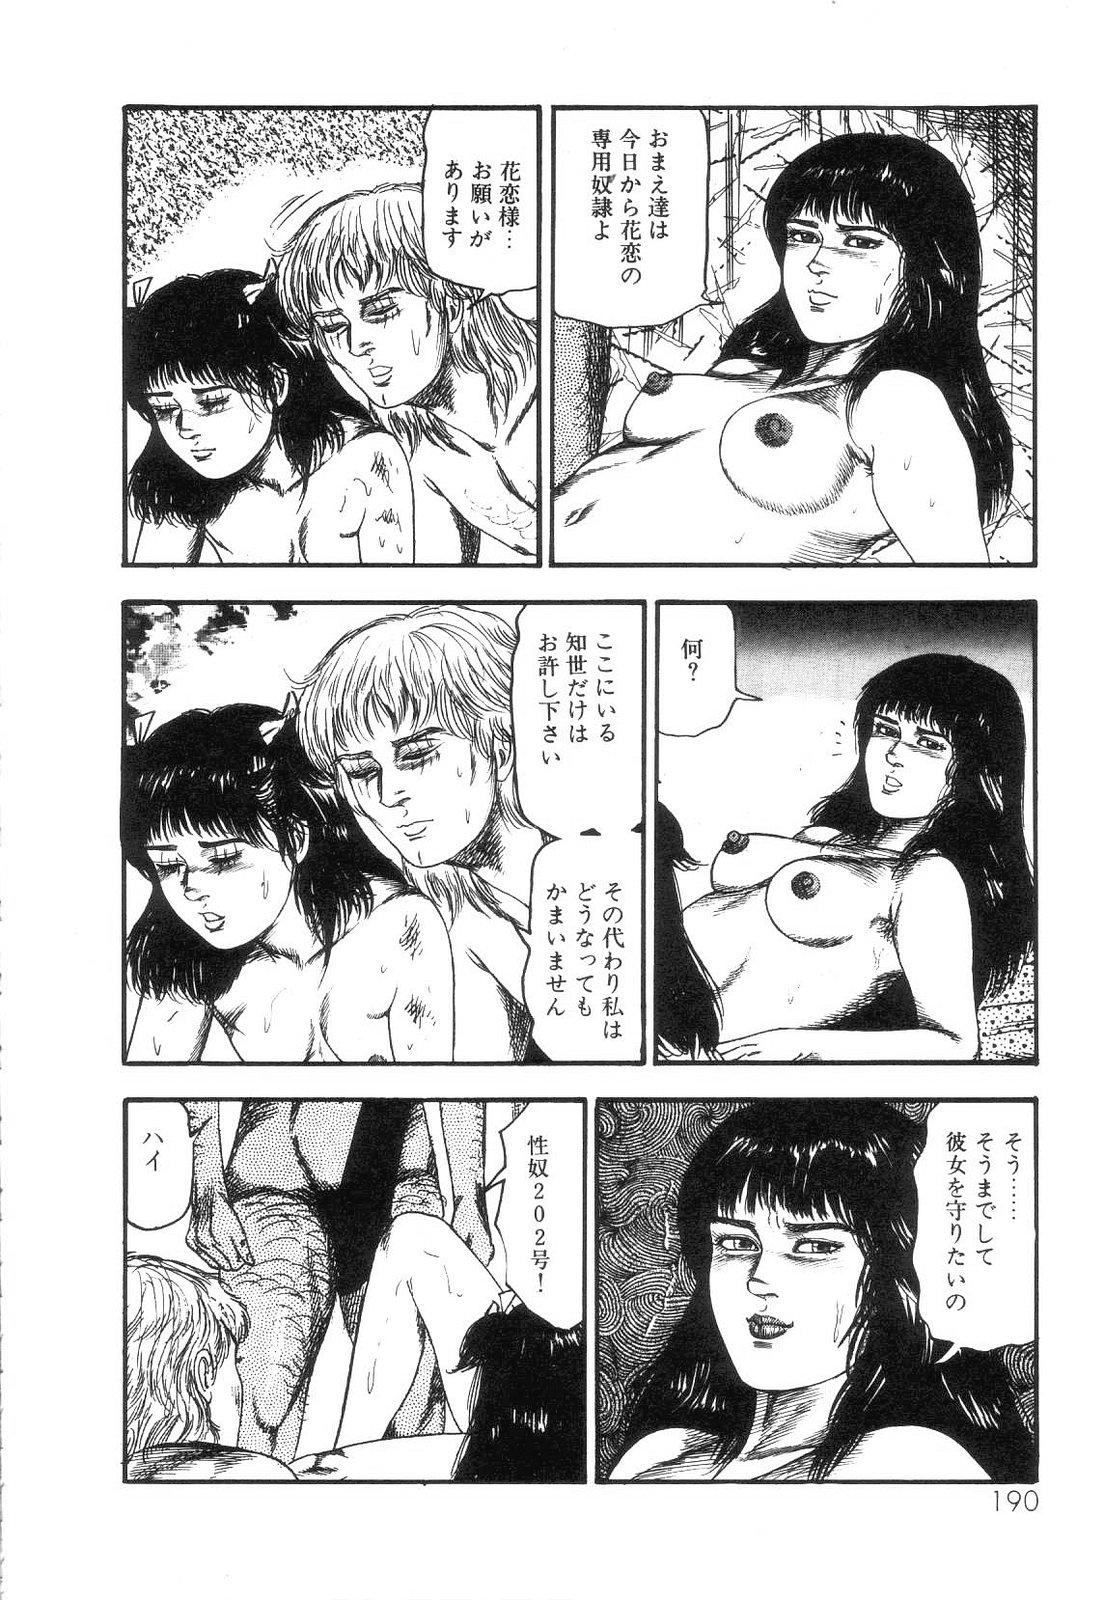 Shiro no Mokushiroku Vol. 4 - Bichiku Karen no Shou 191